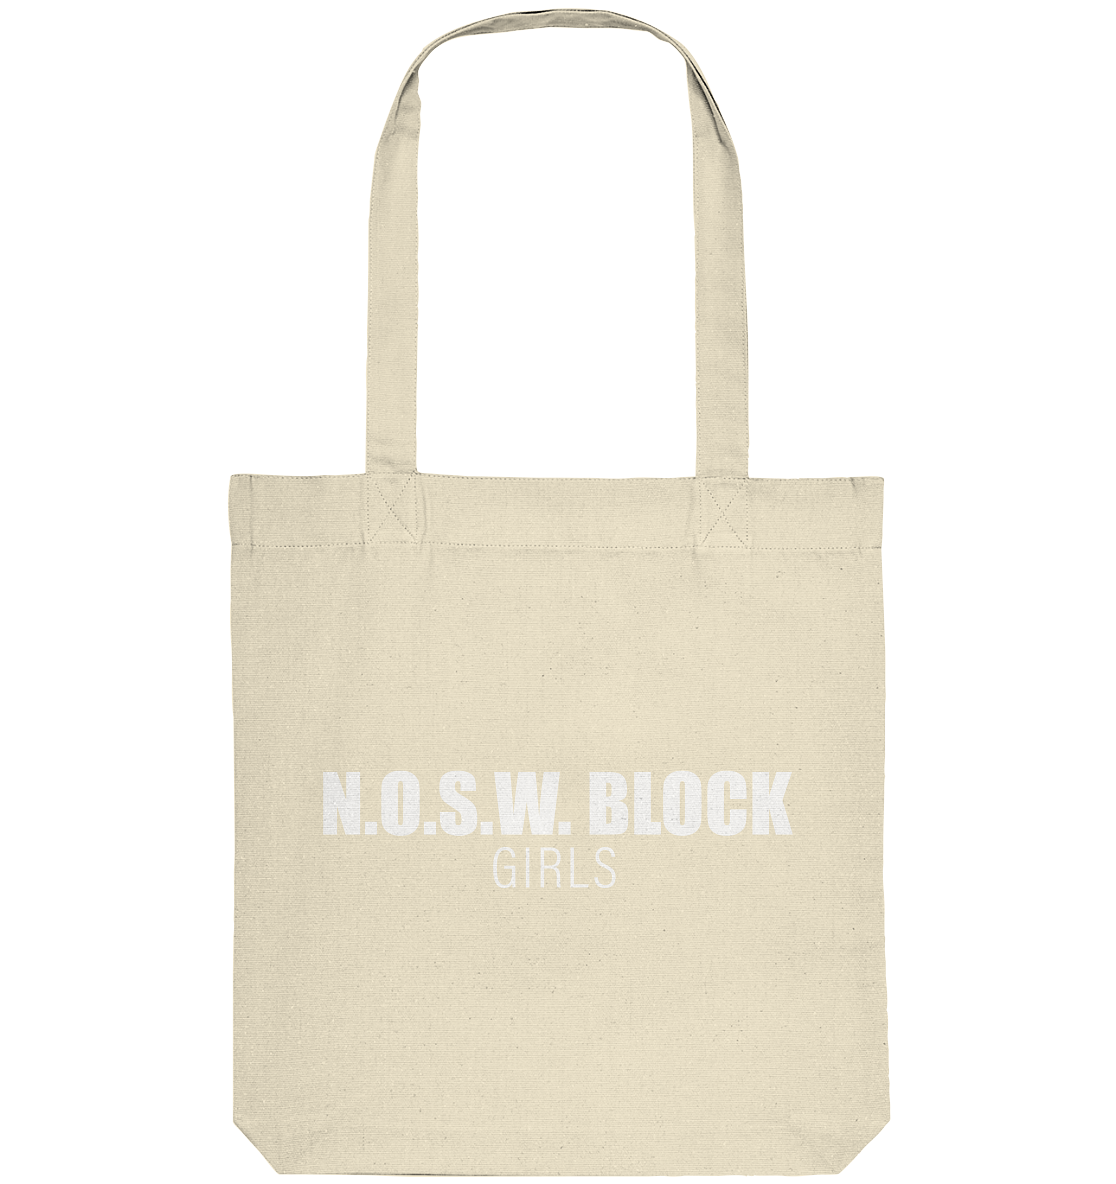 N.O.S.W. BLOCK Tote-Bag "N.O.S.W. BLOCK GIRLS" Organic Baumwolltasche natural